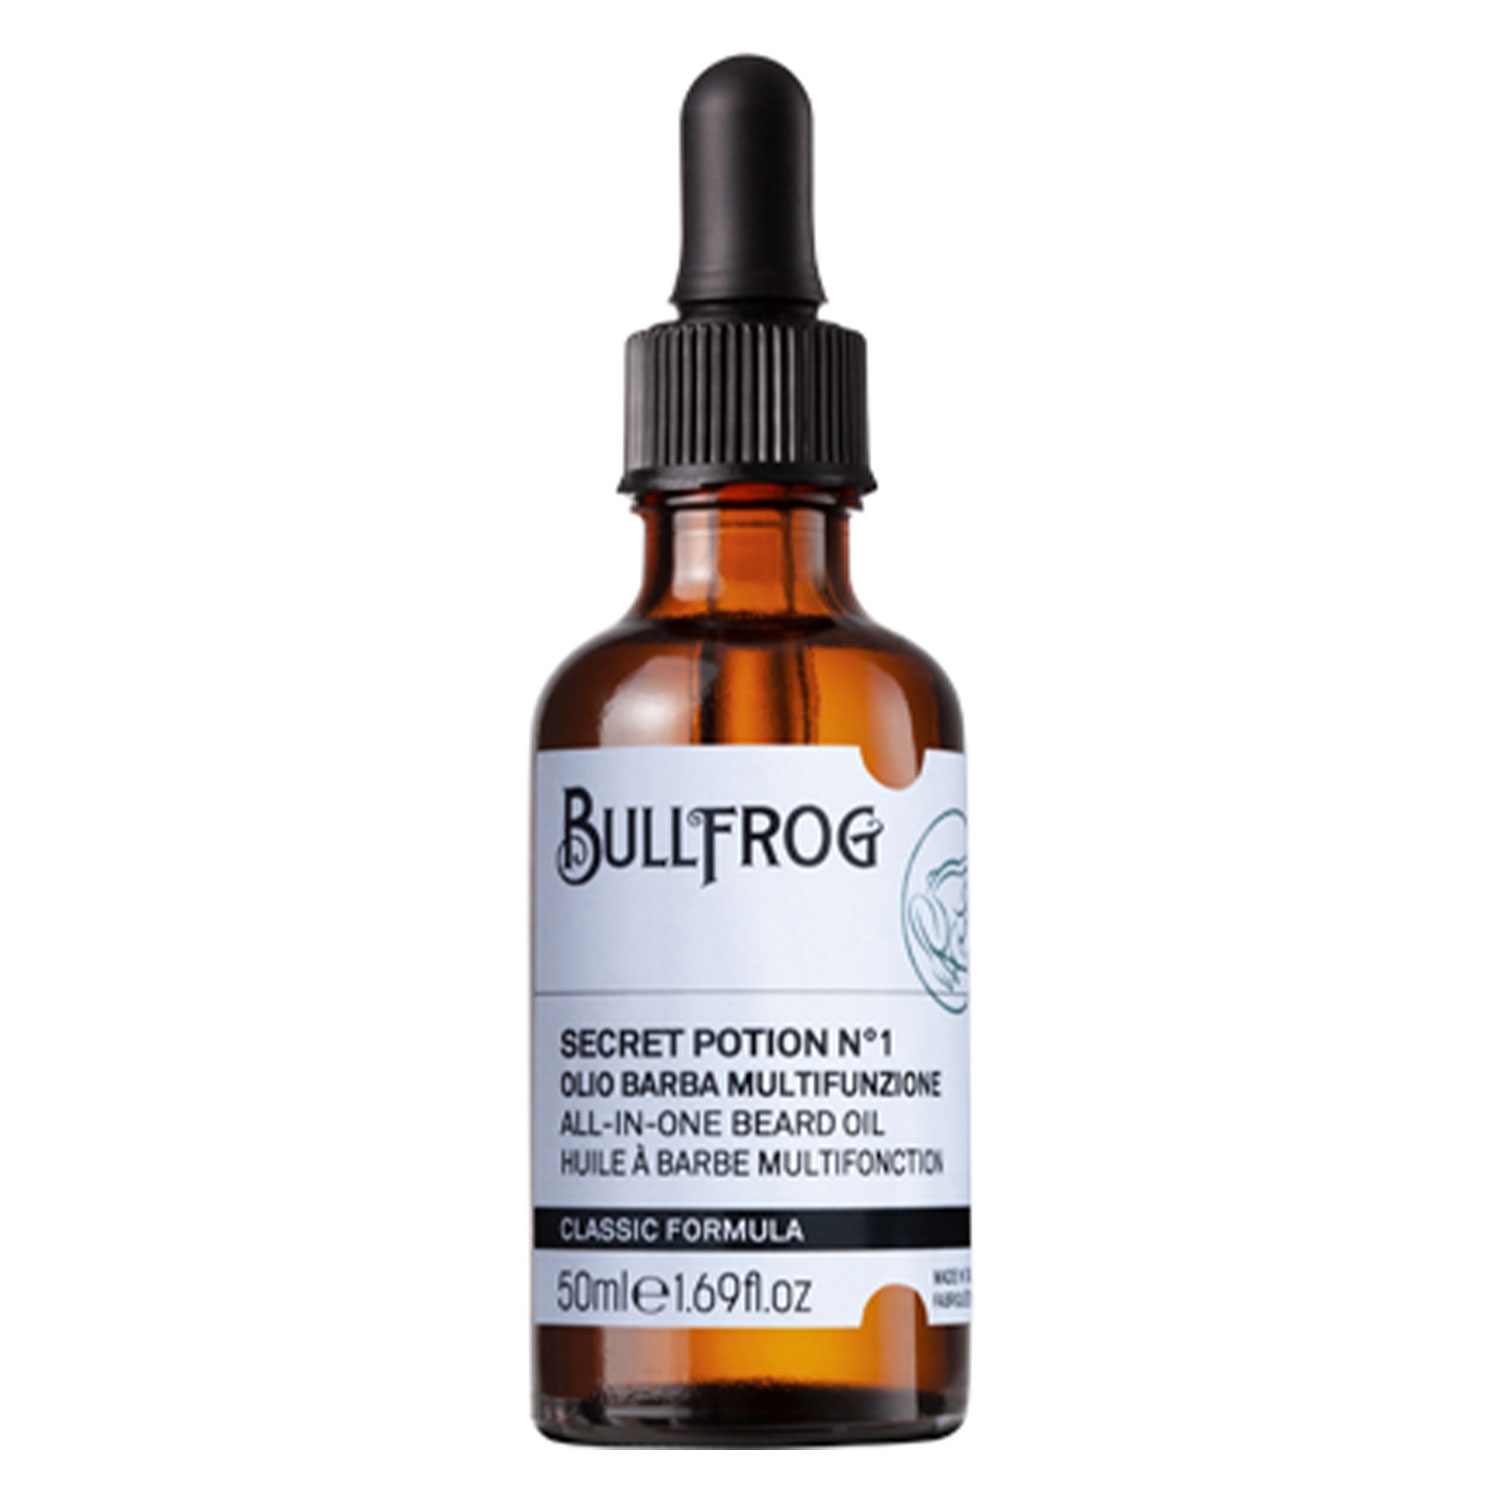 Produktbild von BULLFROG - All-in-One Beard Oil Secret Potion N°1